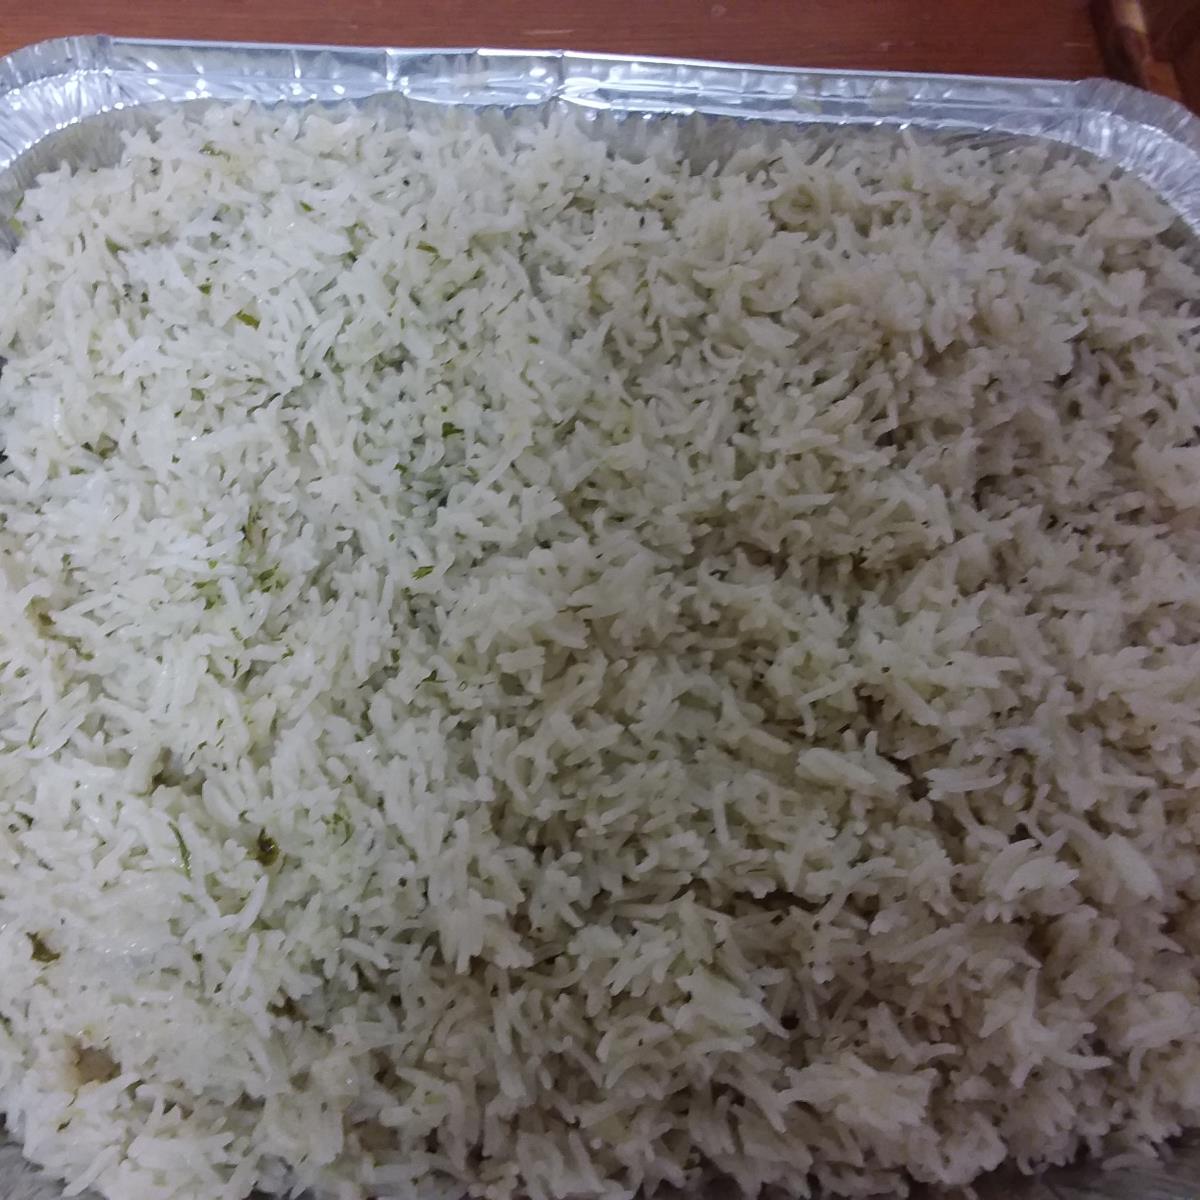 אורז בסמטי אחד אחד..